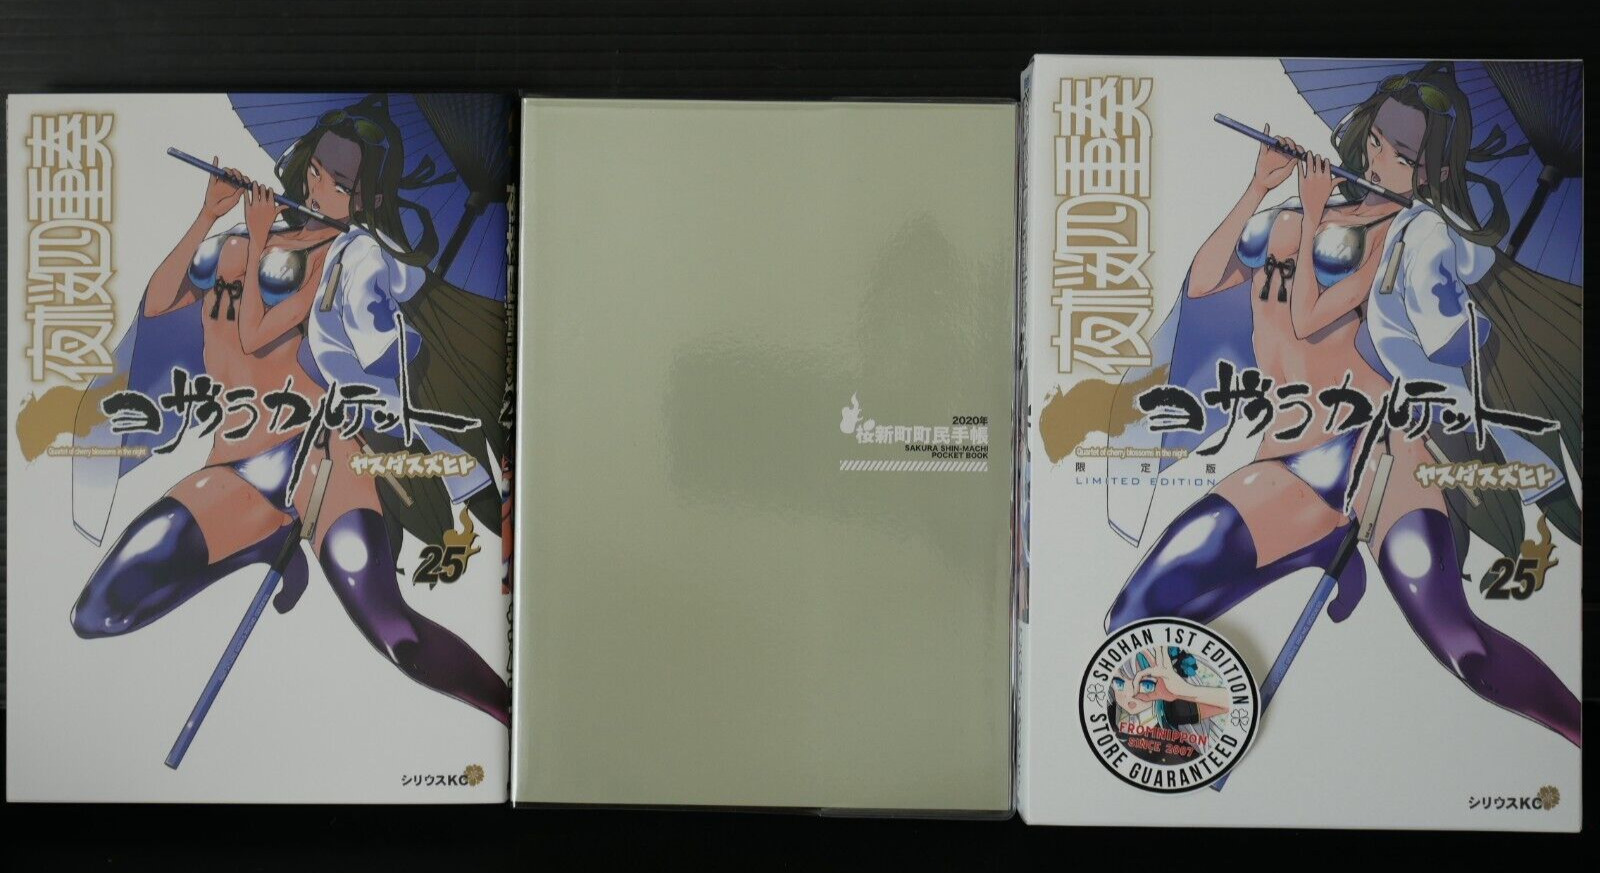 SHOHAN OOP: Yozakura Quartet Vol.25 Manga Limited Edition by Suzuhito Yasuda